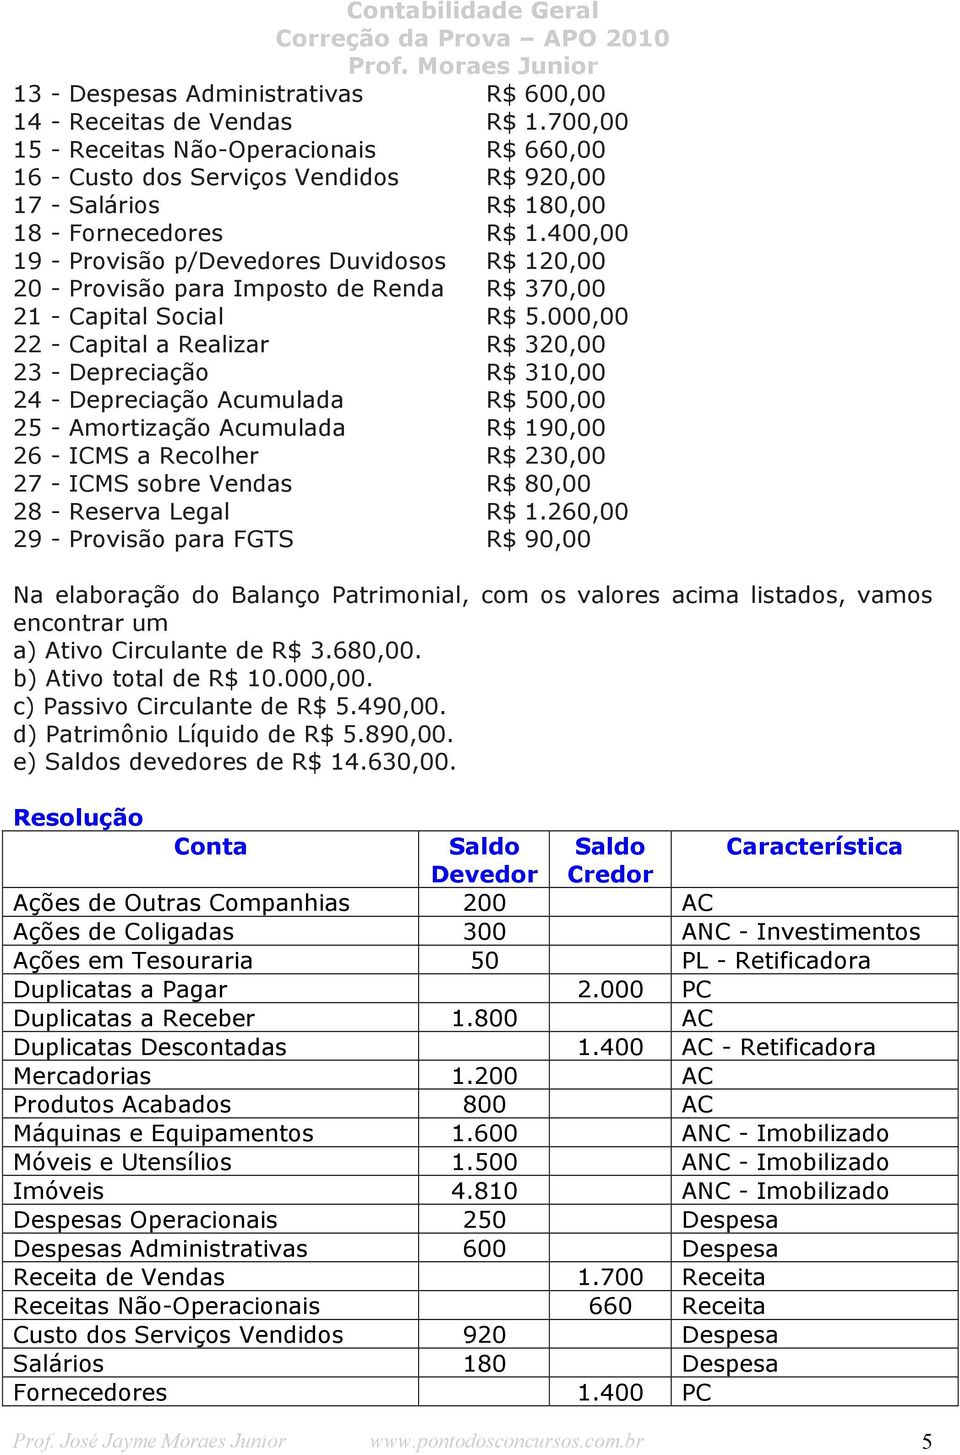 400,00 19 - Provisão p/devedores Duvidosos R$ 120,00 20 - Provisão para Imposto de Renda R$ 370,00 21 - Capital Social R$ 5.